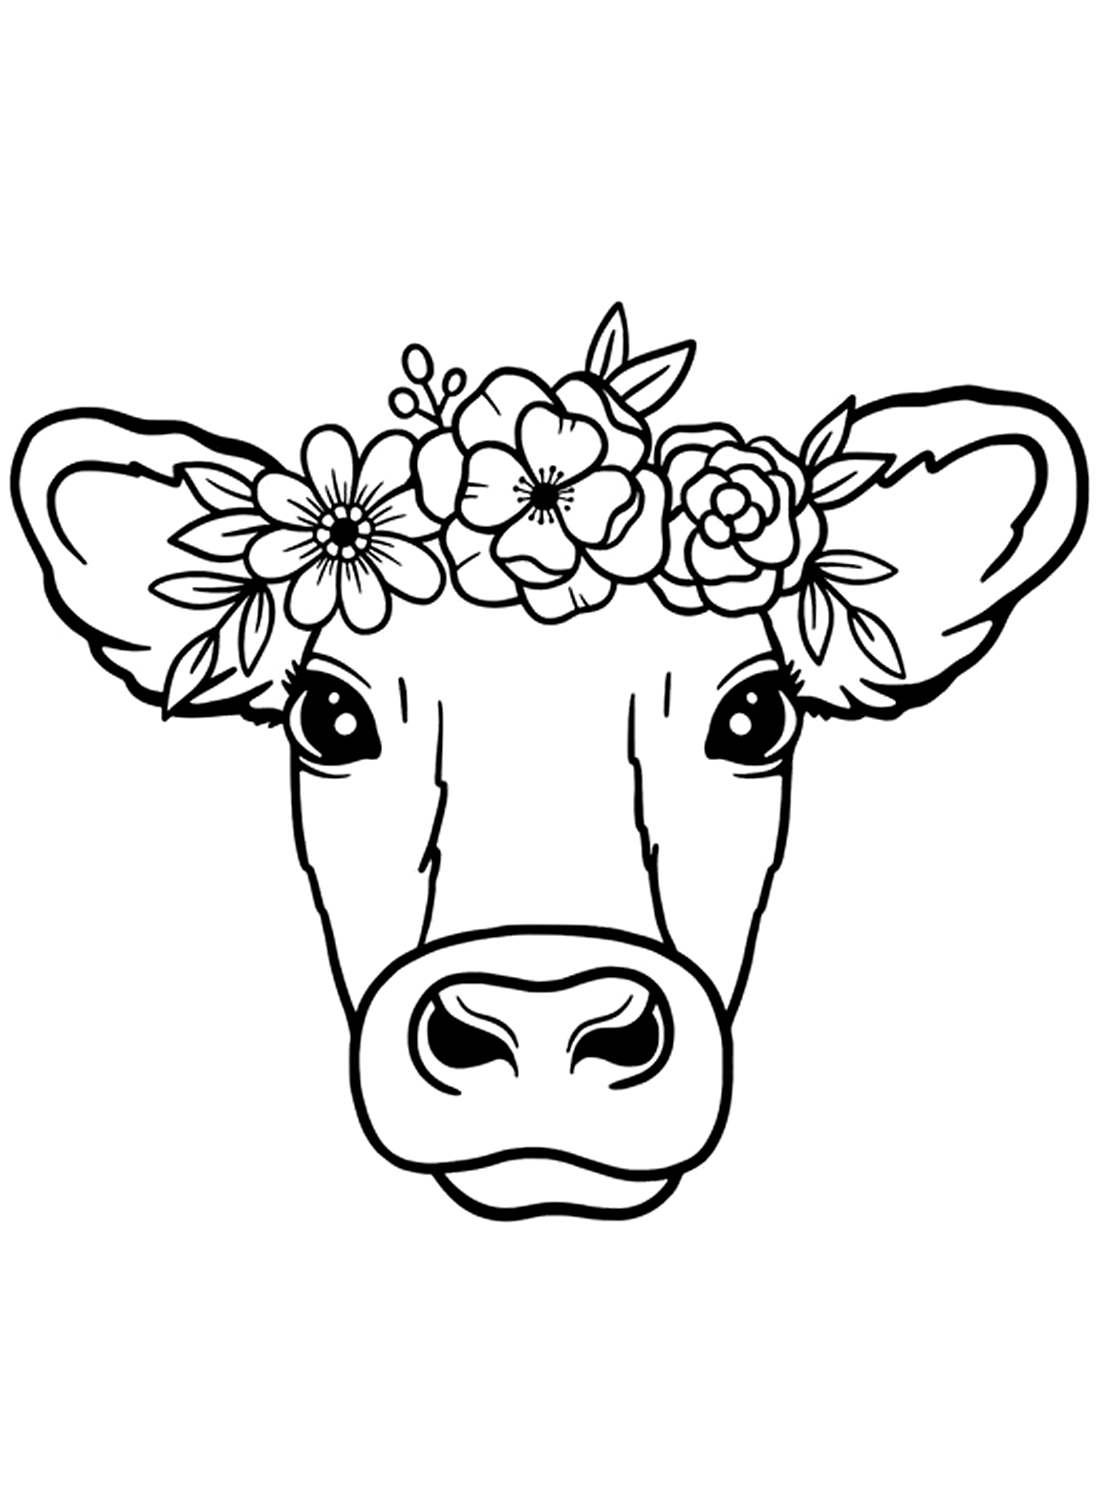 Ein Kuhkopfbild von Cow